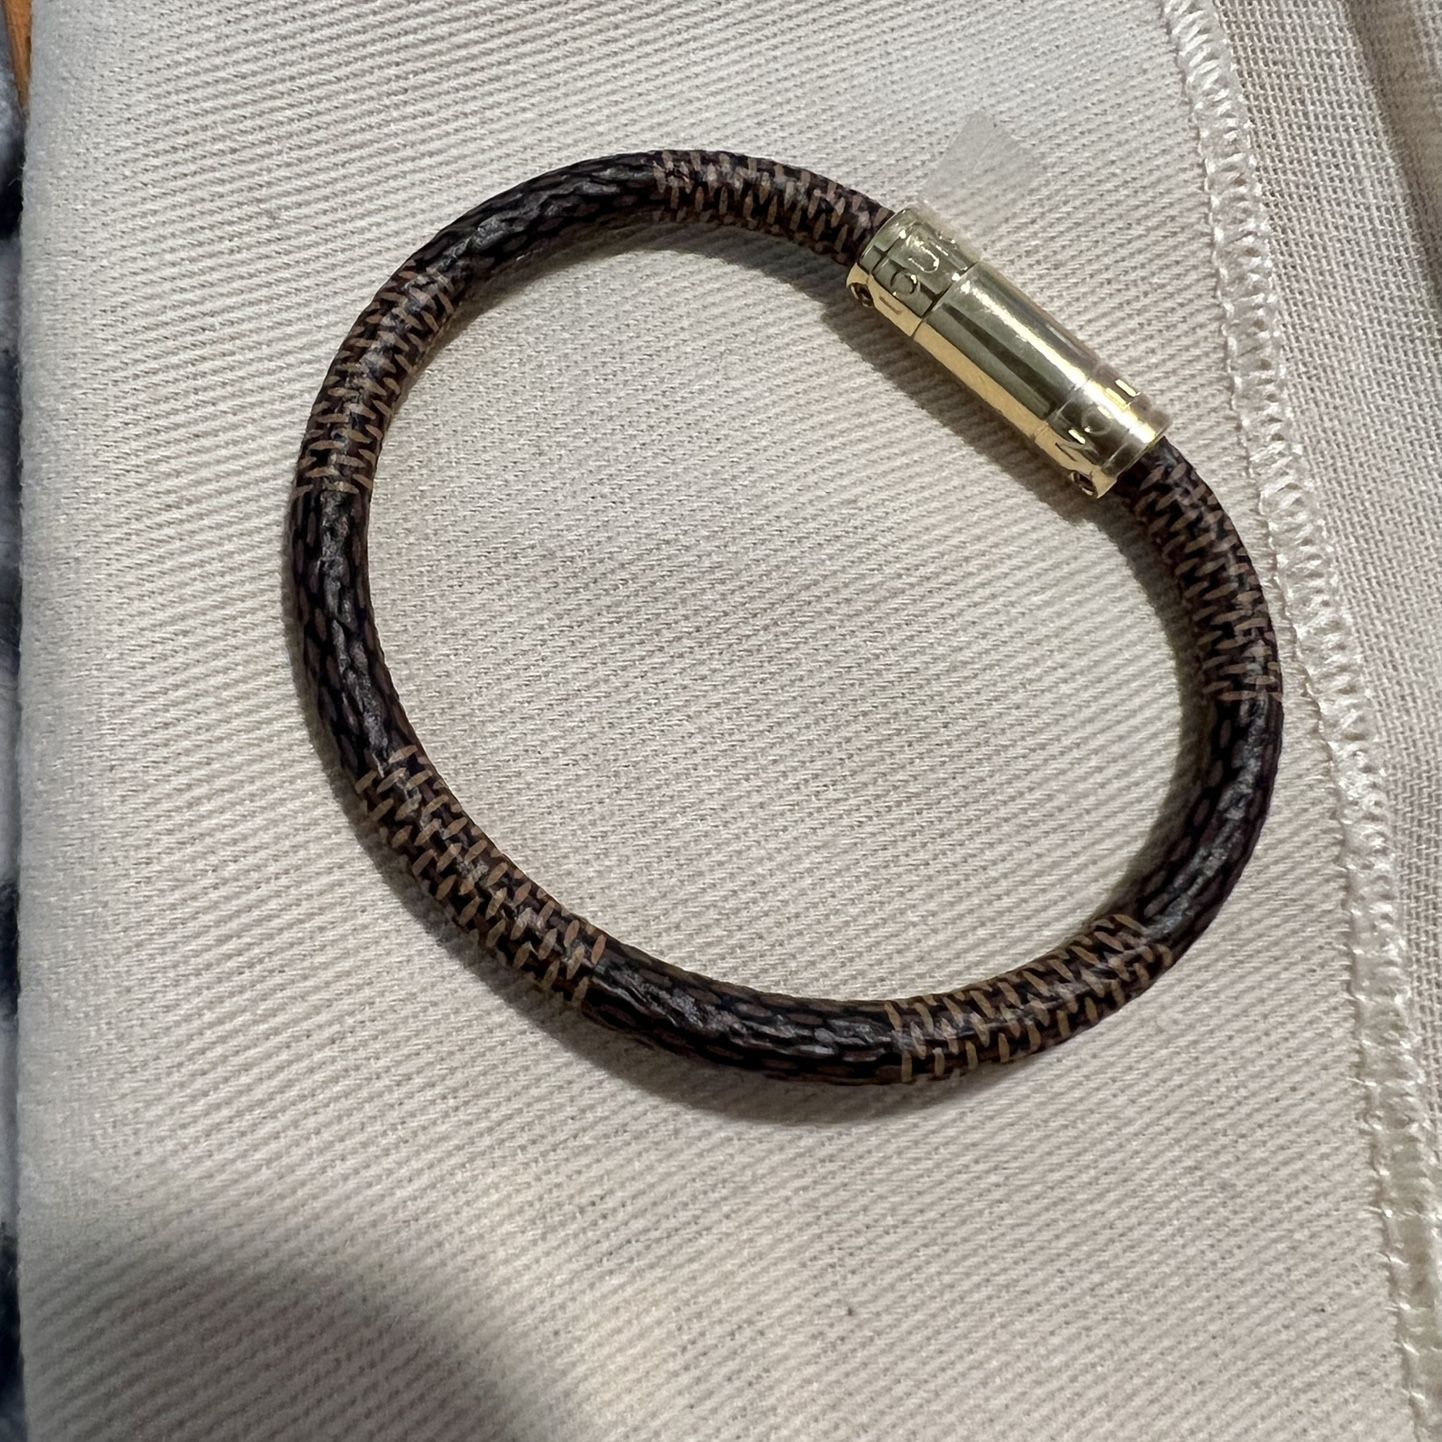 Louis Vuitton Charm Bracelet for Sale in Bellflower, CA - OfferUp